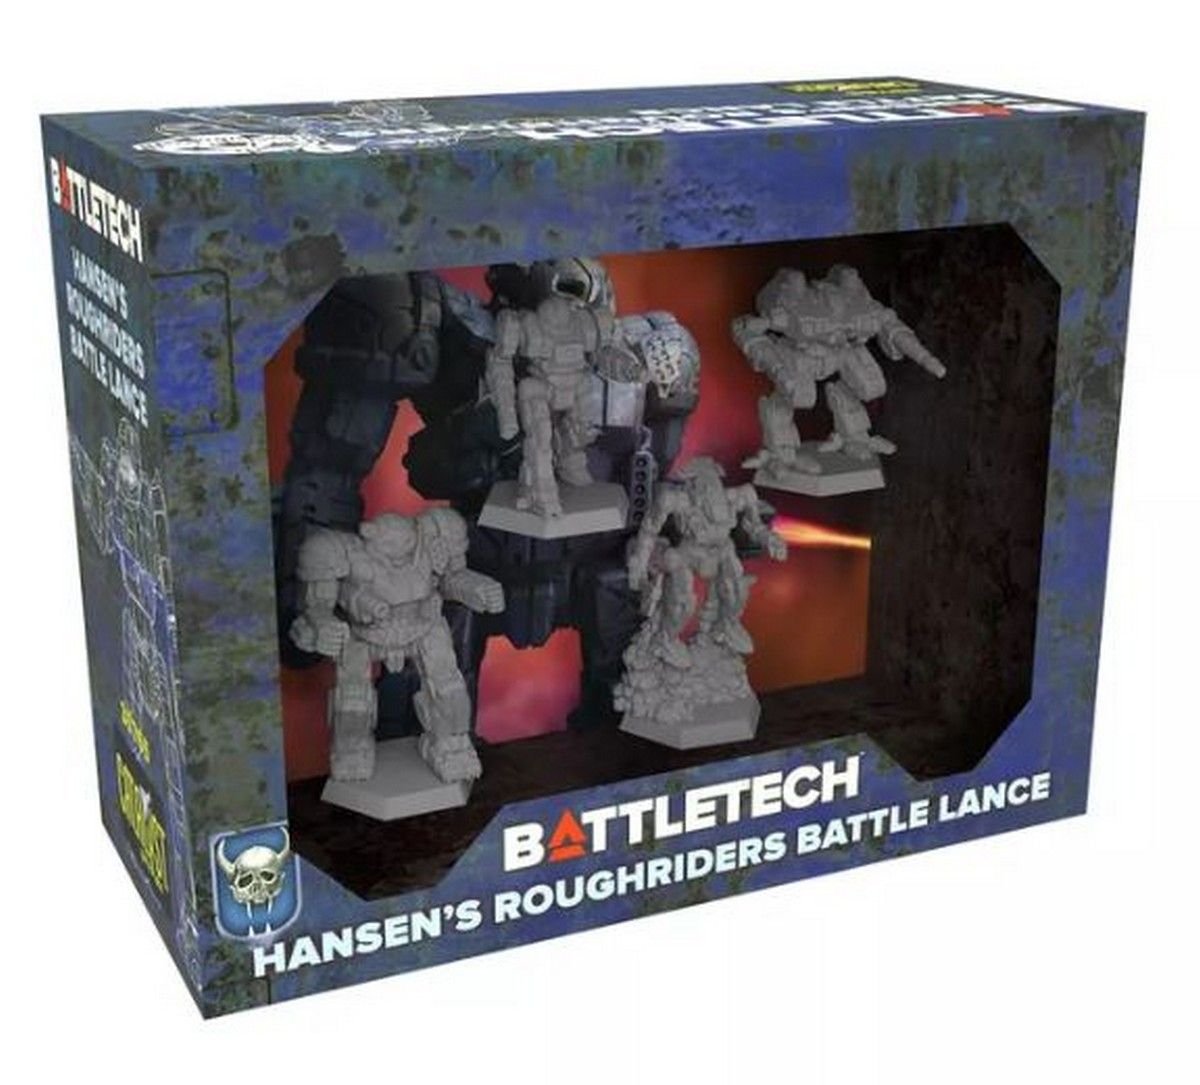 BattleTech Hansens Roughriders Battle Lance